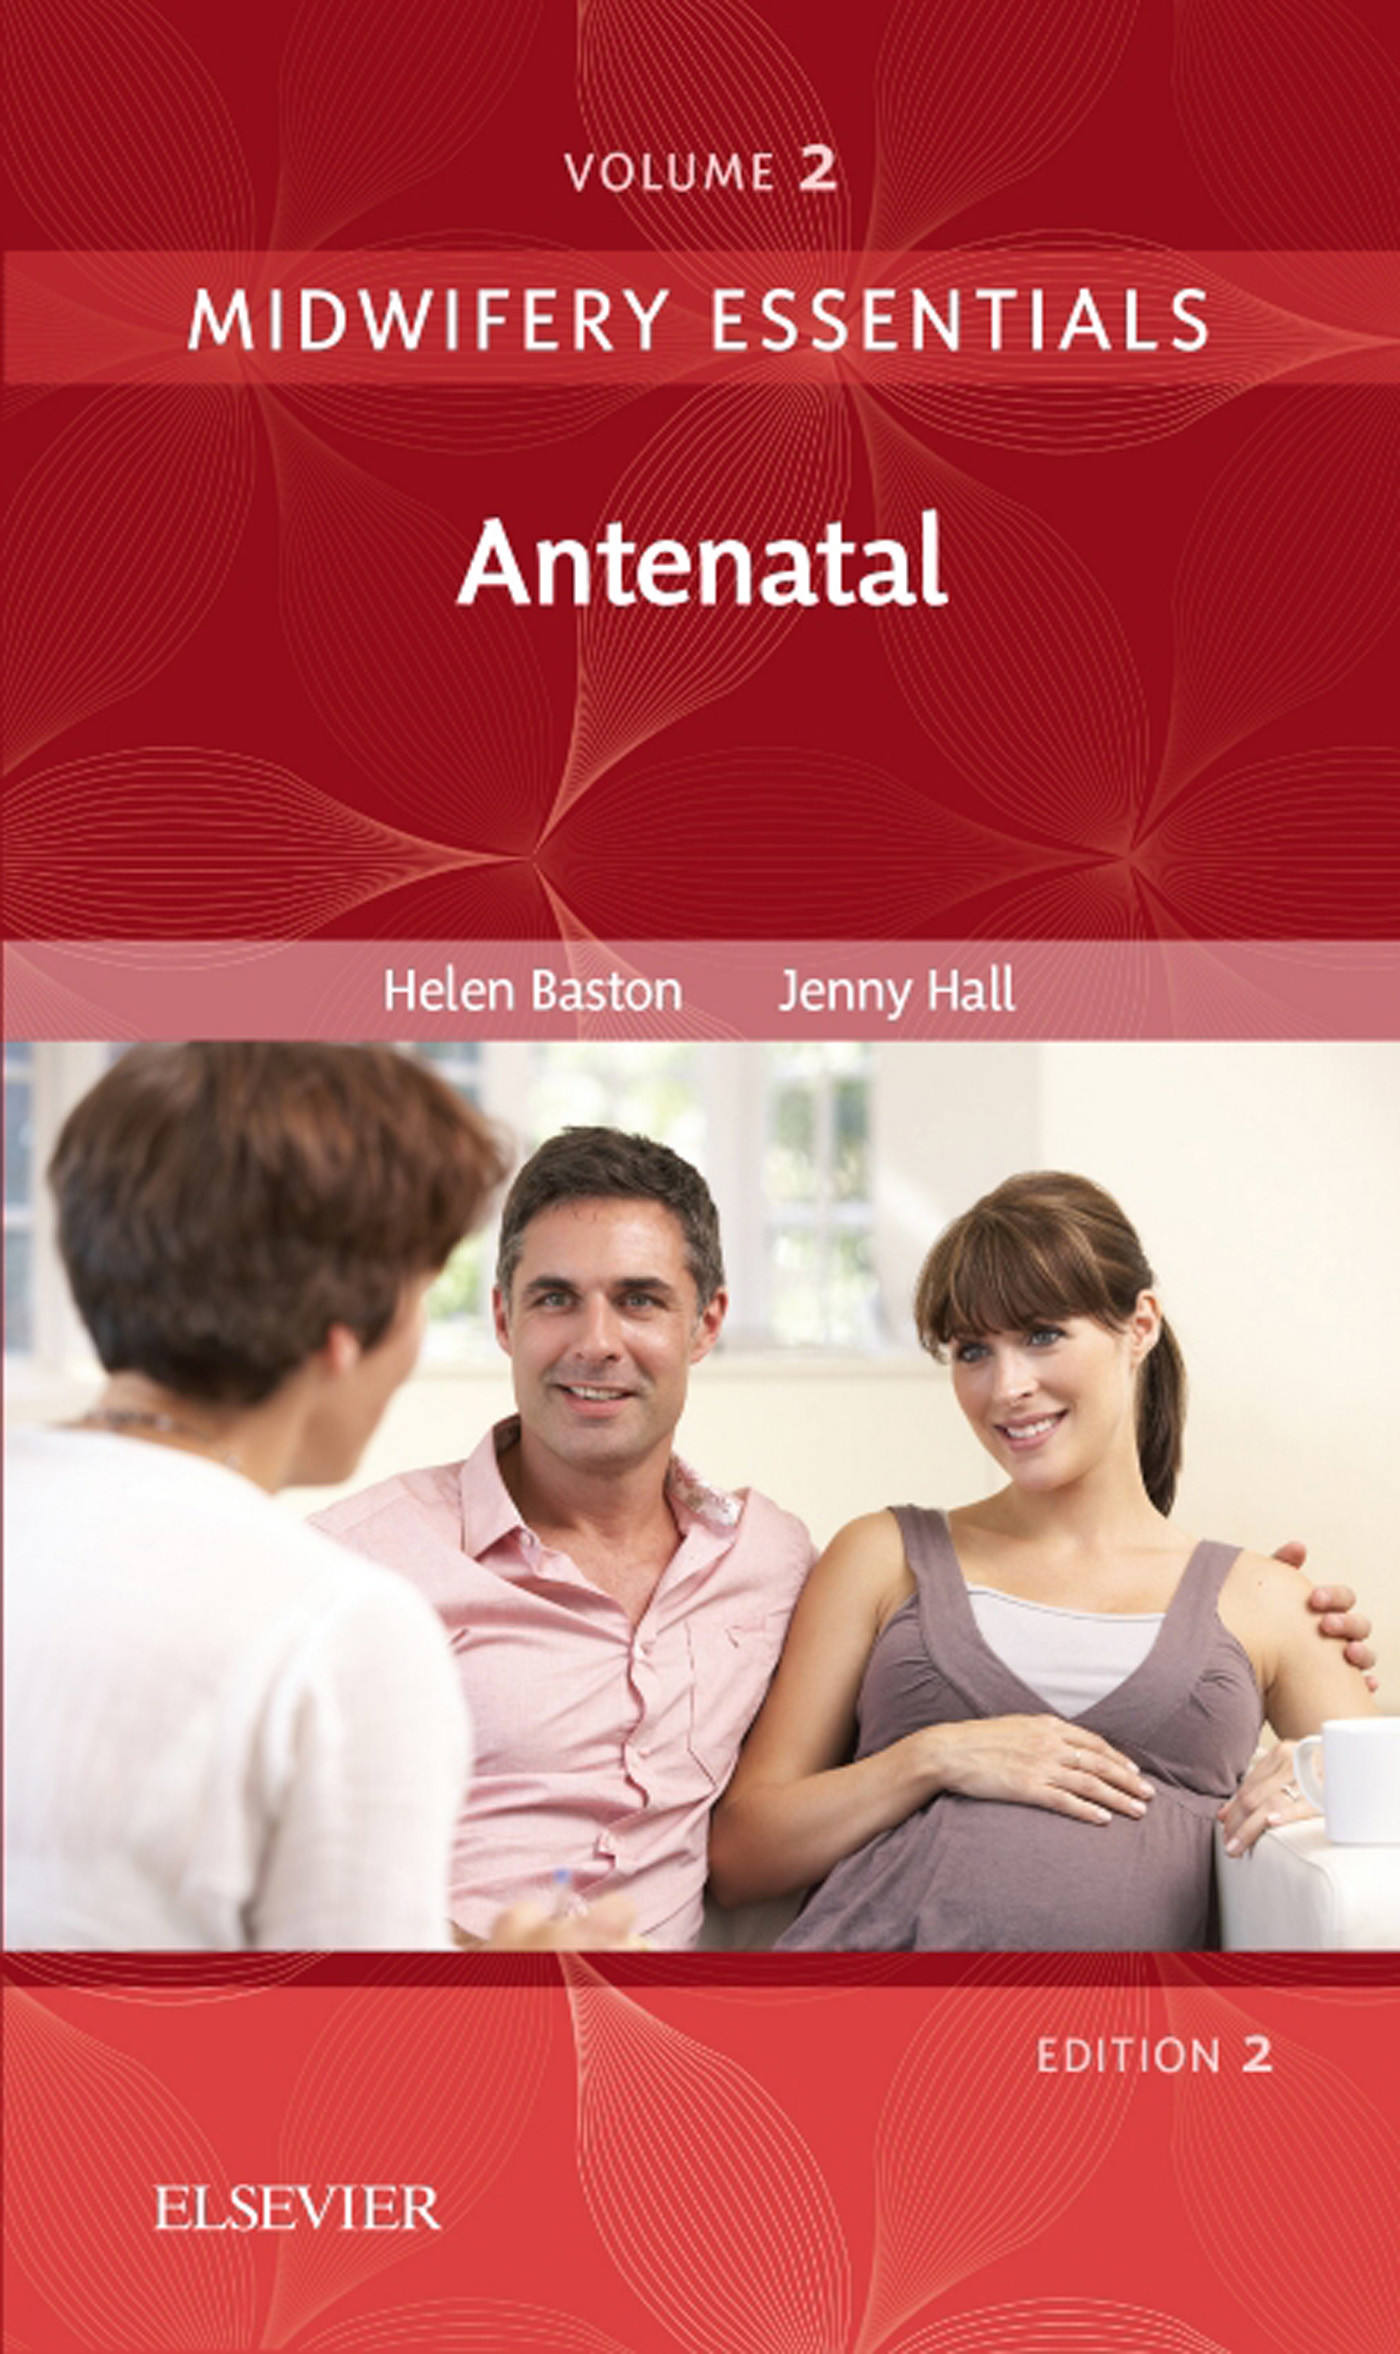 Cover Midwifery Essentials: Antenatal E-Book